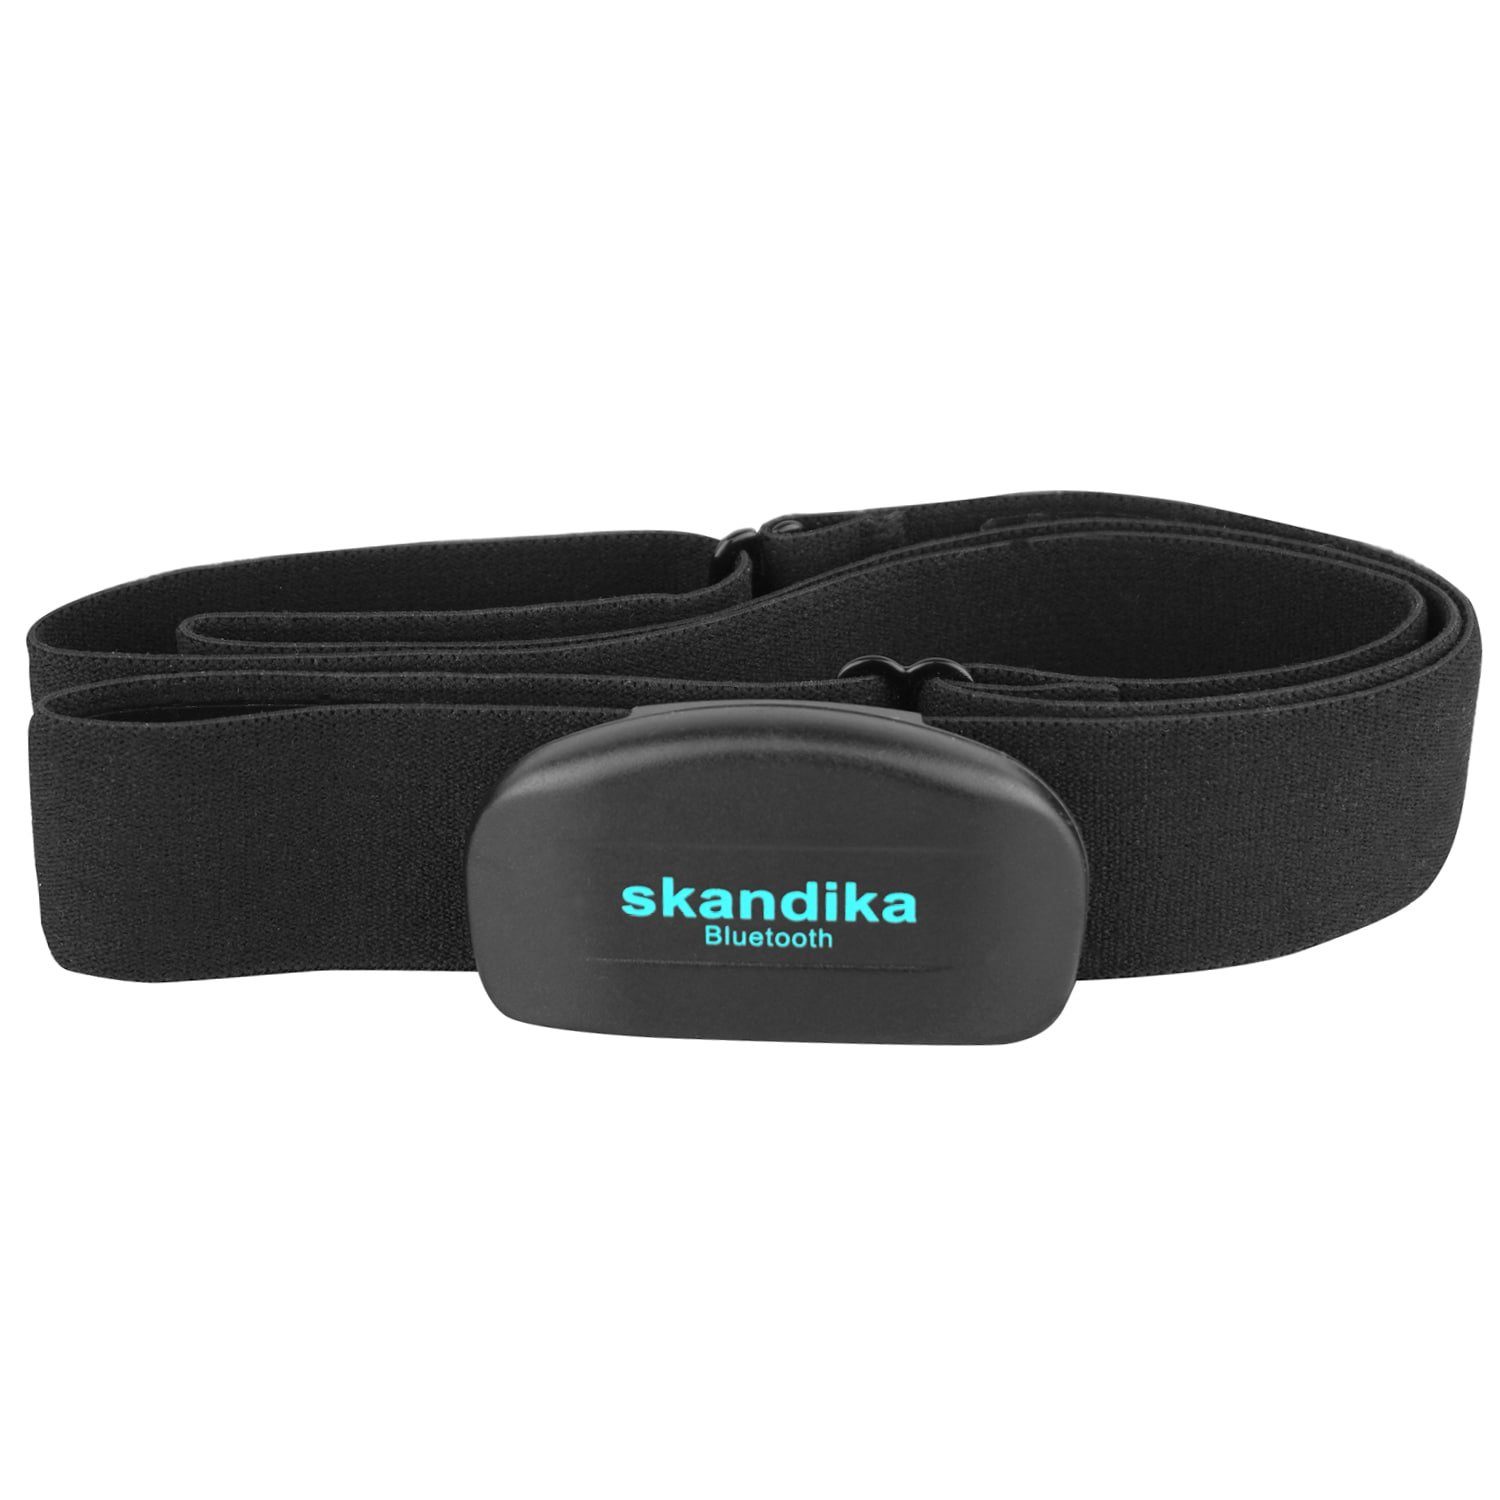 Skandika Brustgurt Pulsmesser Bluetooth, Herzfrequenzmesser für Sportgeräte